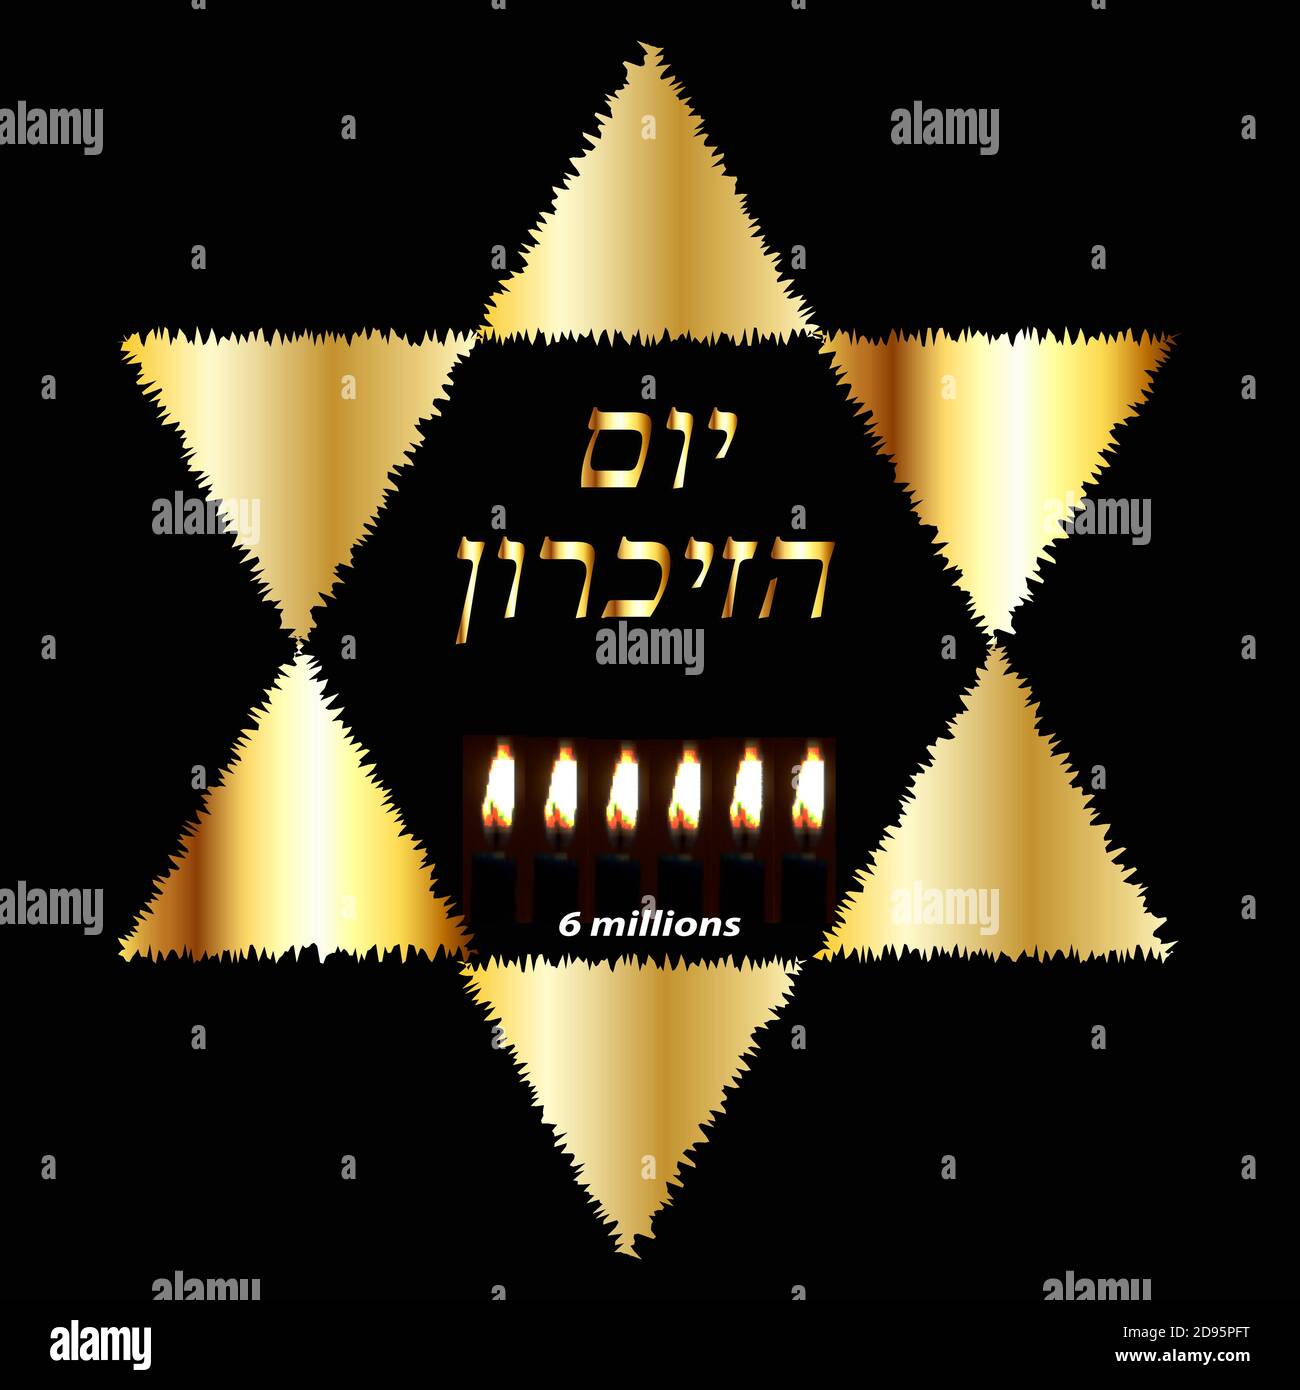 Journée internationale de commémoration de l'Holocauste, le 27 janvier. L'étoile juive d'or. Six bougies allumées pour 6 millions de morts. Inscription or en Yom hébreu Illustration de Vecteur